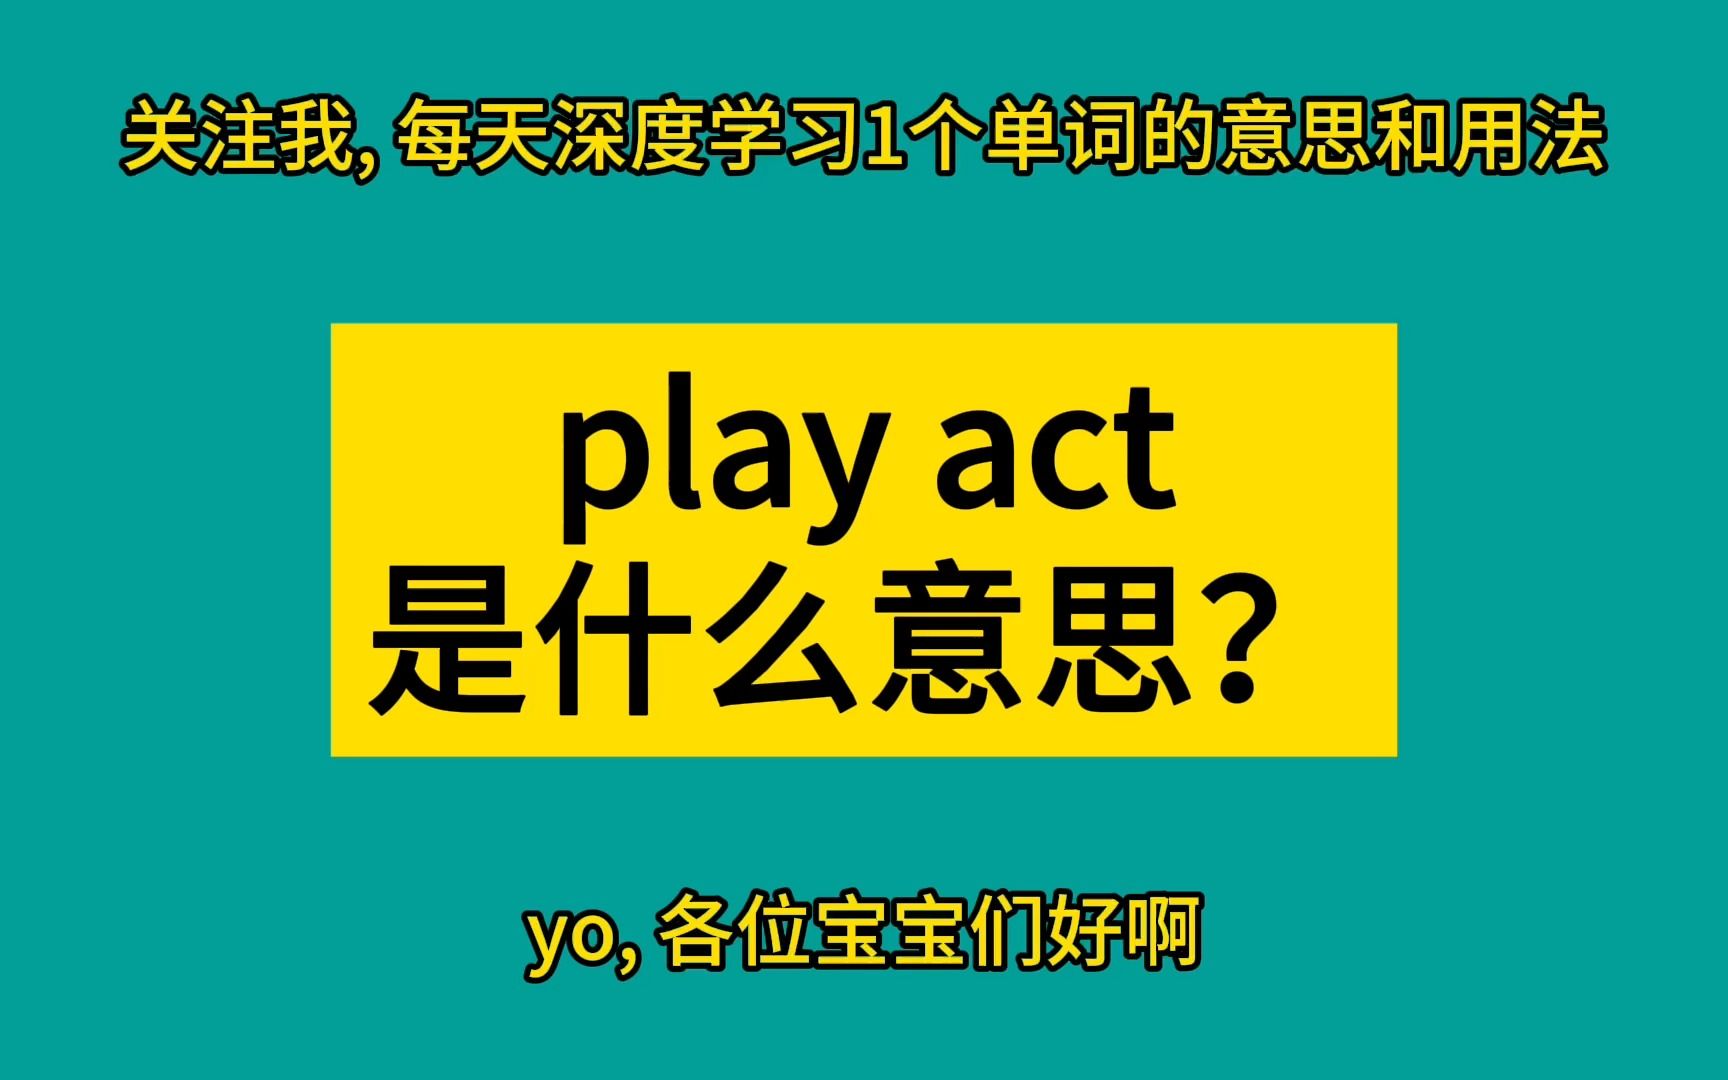 play act 是什么意思?